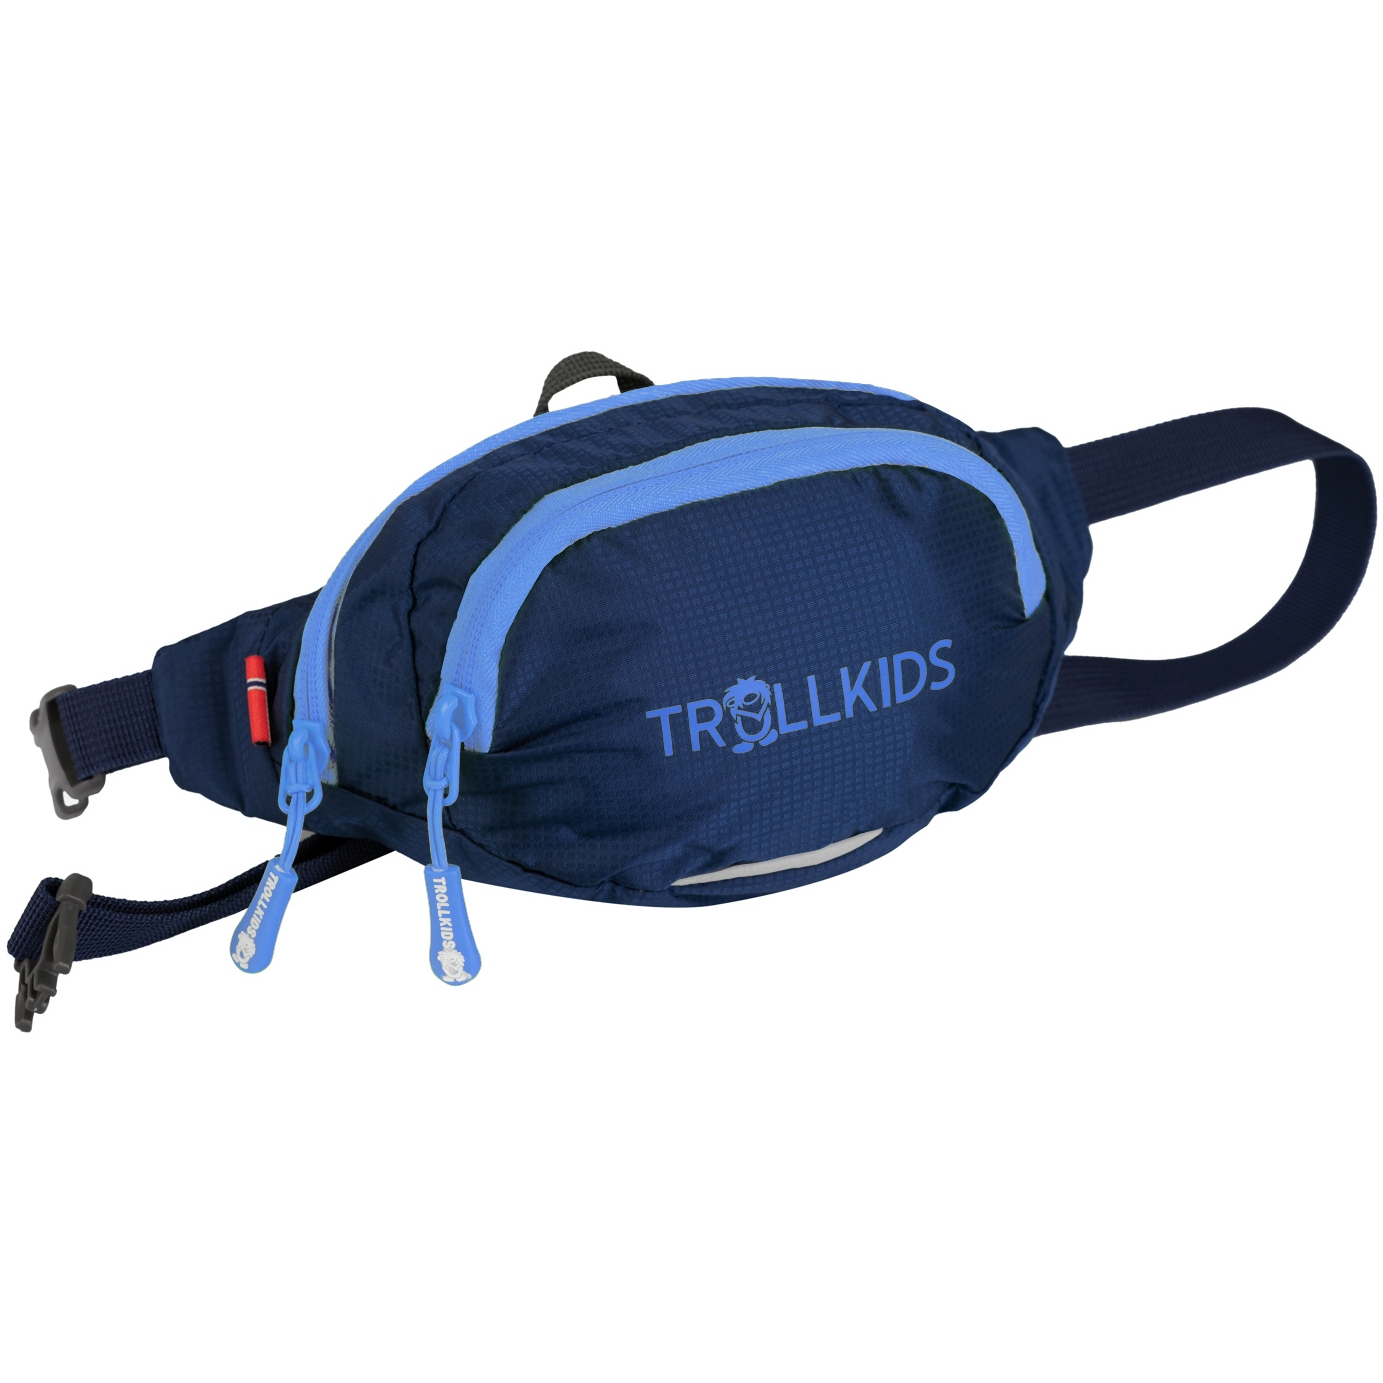 Produktbild von Trollkids Trolltunga Hüfttasche 1.2L Kinder - navy/medium blue